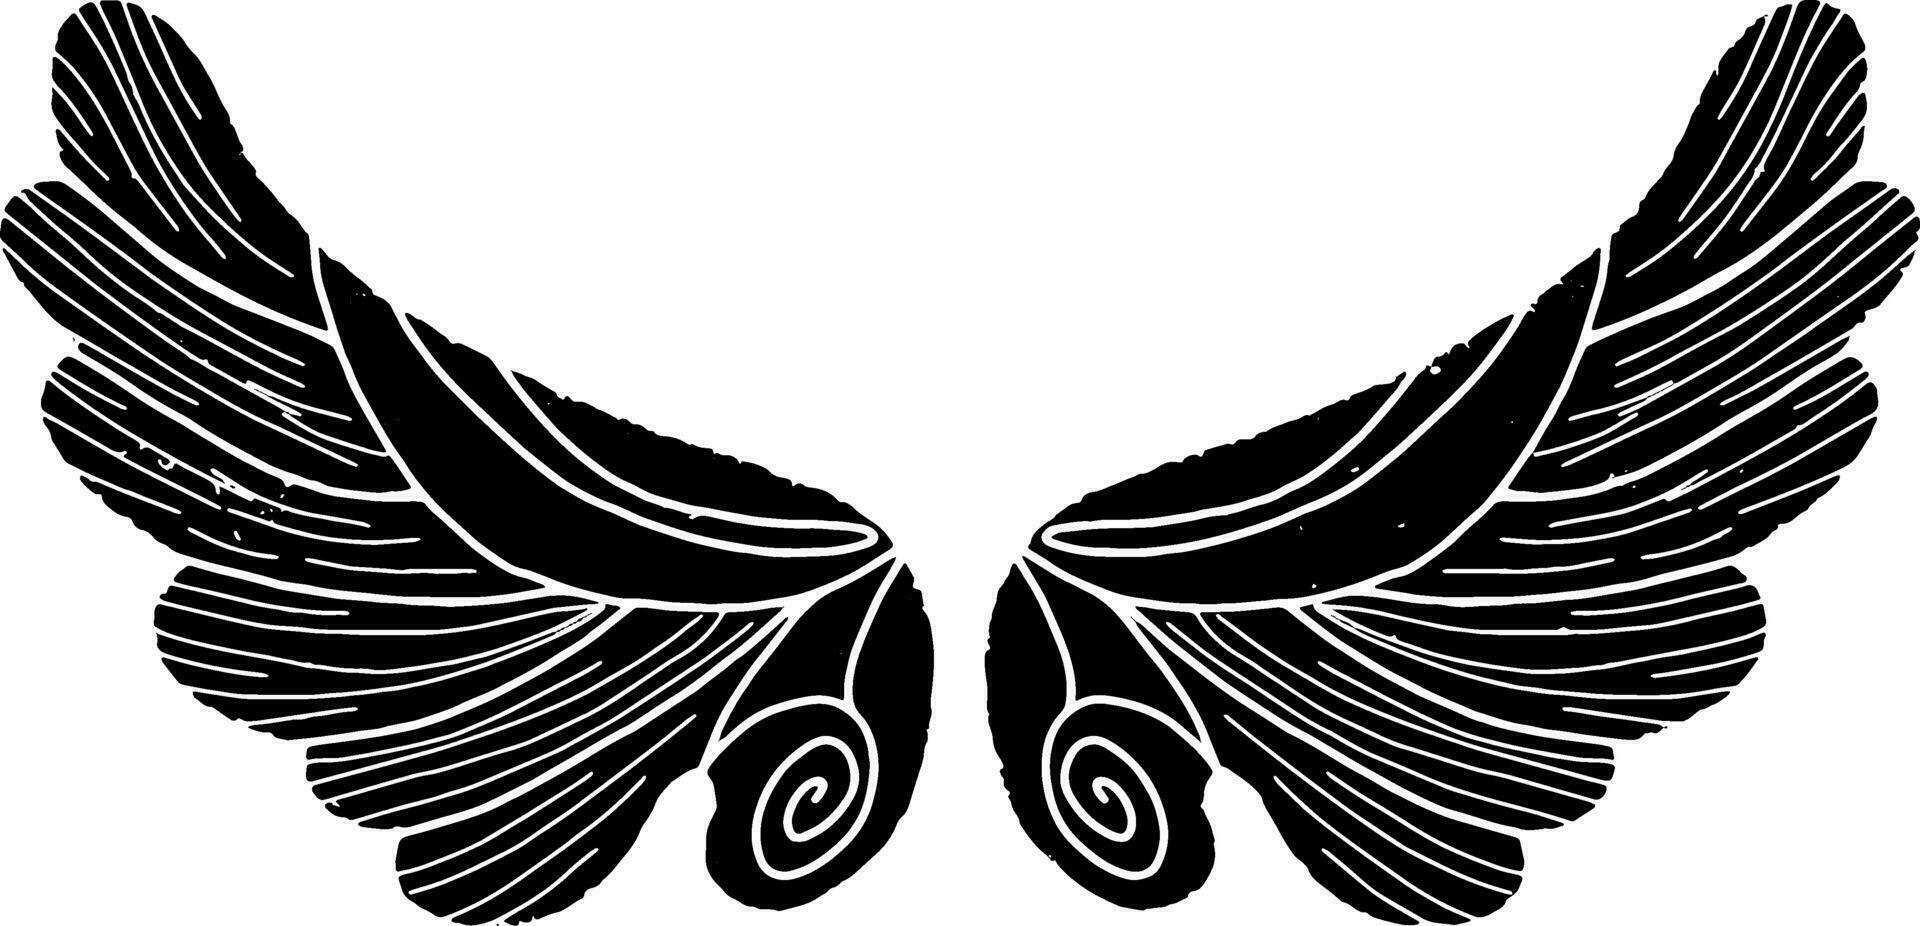 en svart och vit teckning av två vingar vektor